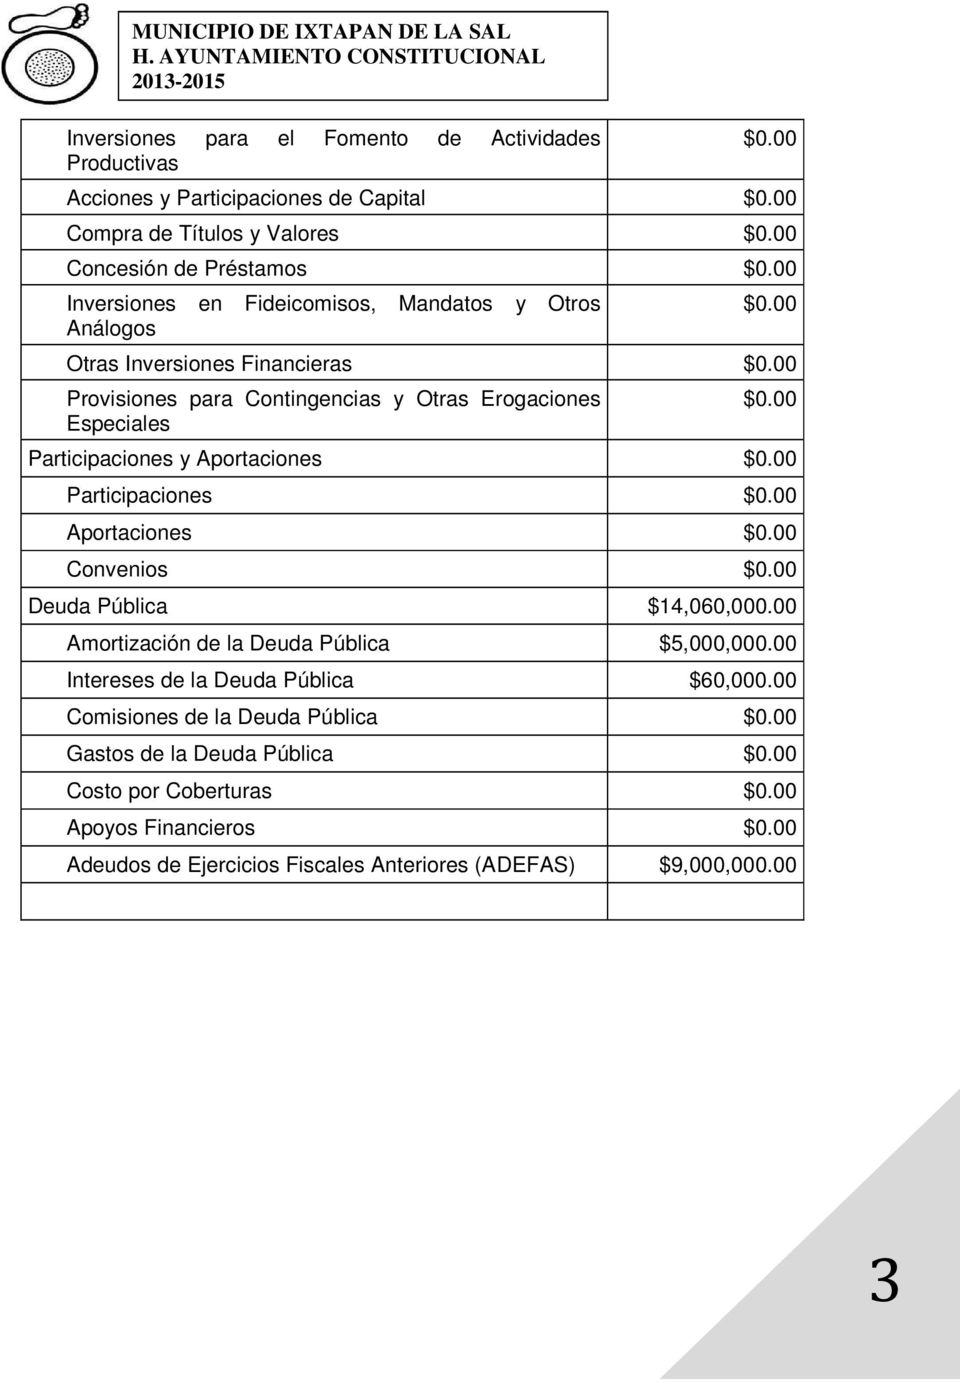 Aportaciones Participaciones Aportaciones Convenios Deuda Pública $14,060,000.00 Amortización de la Deuda Pública $5,000,000.